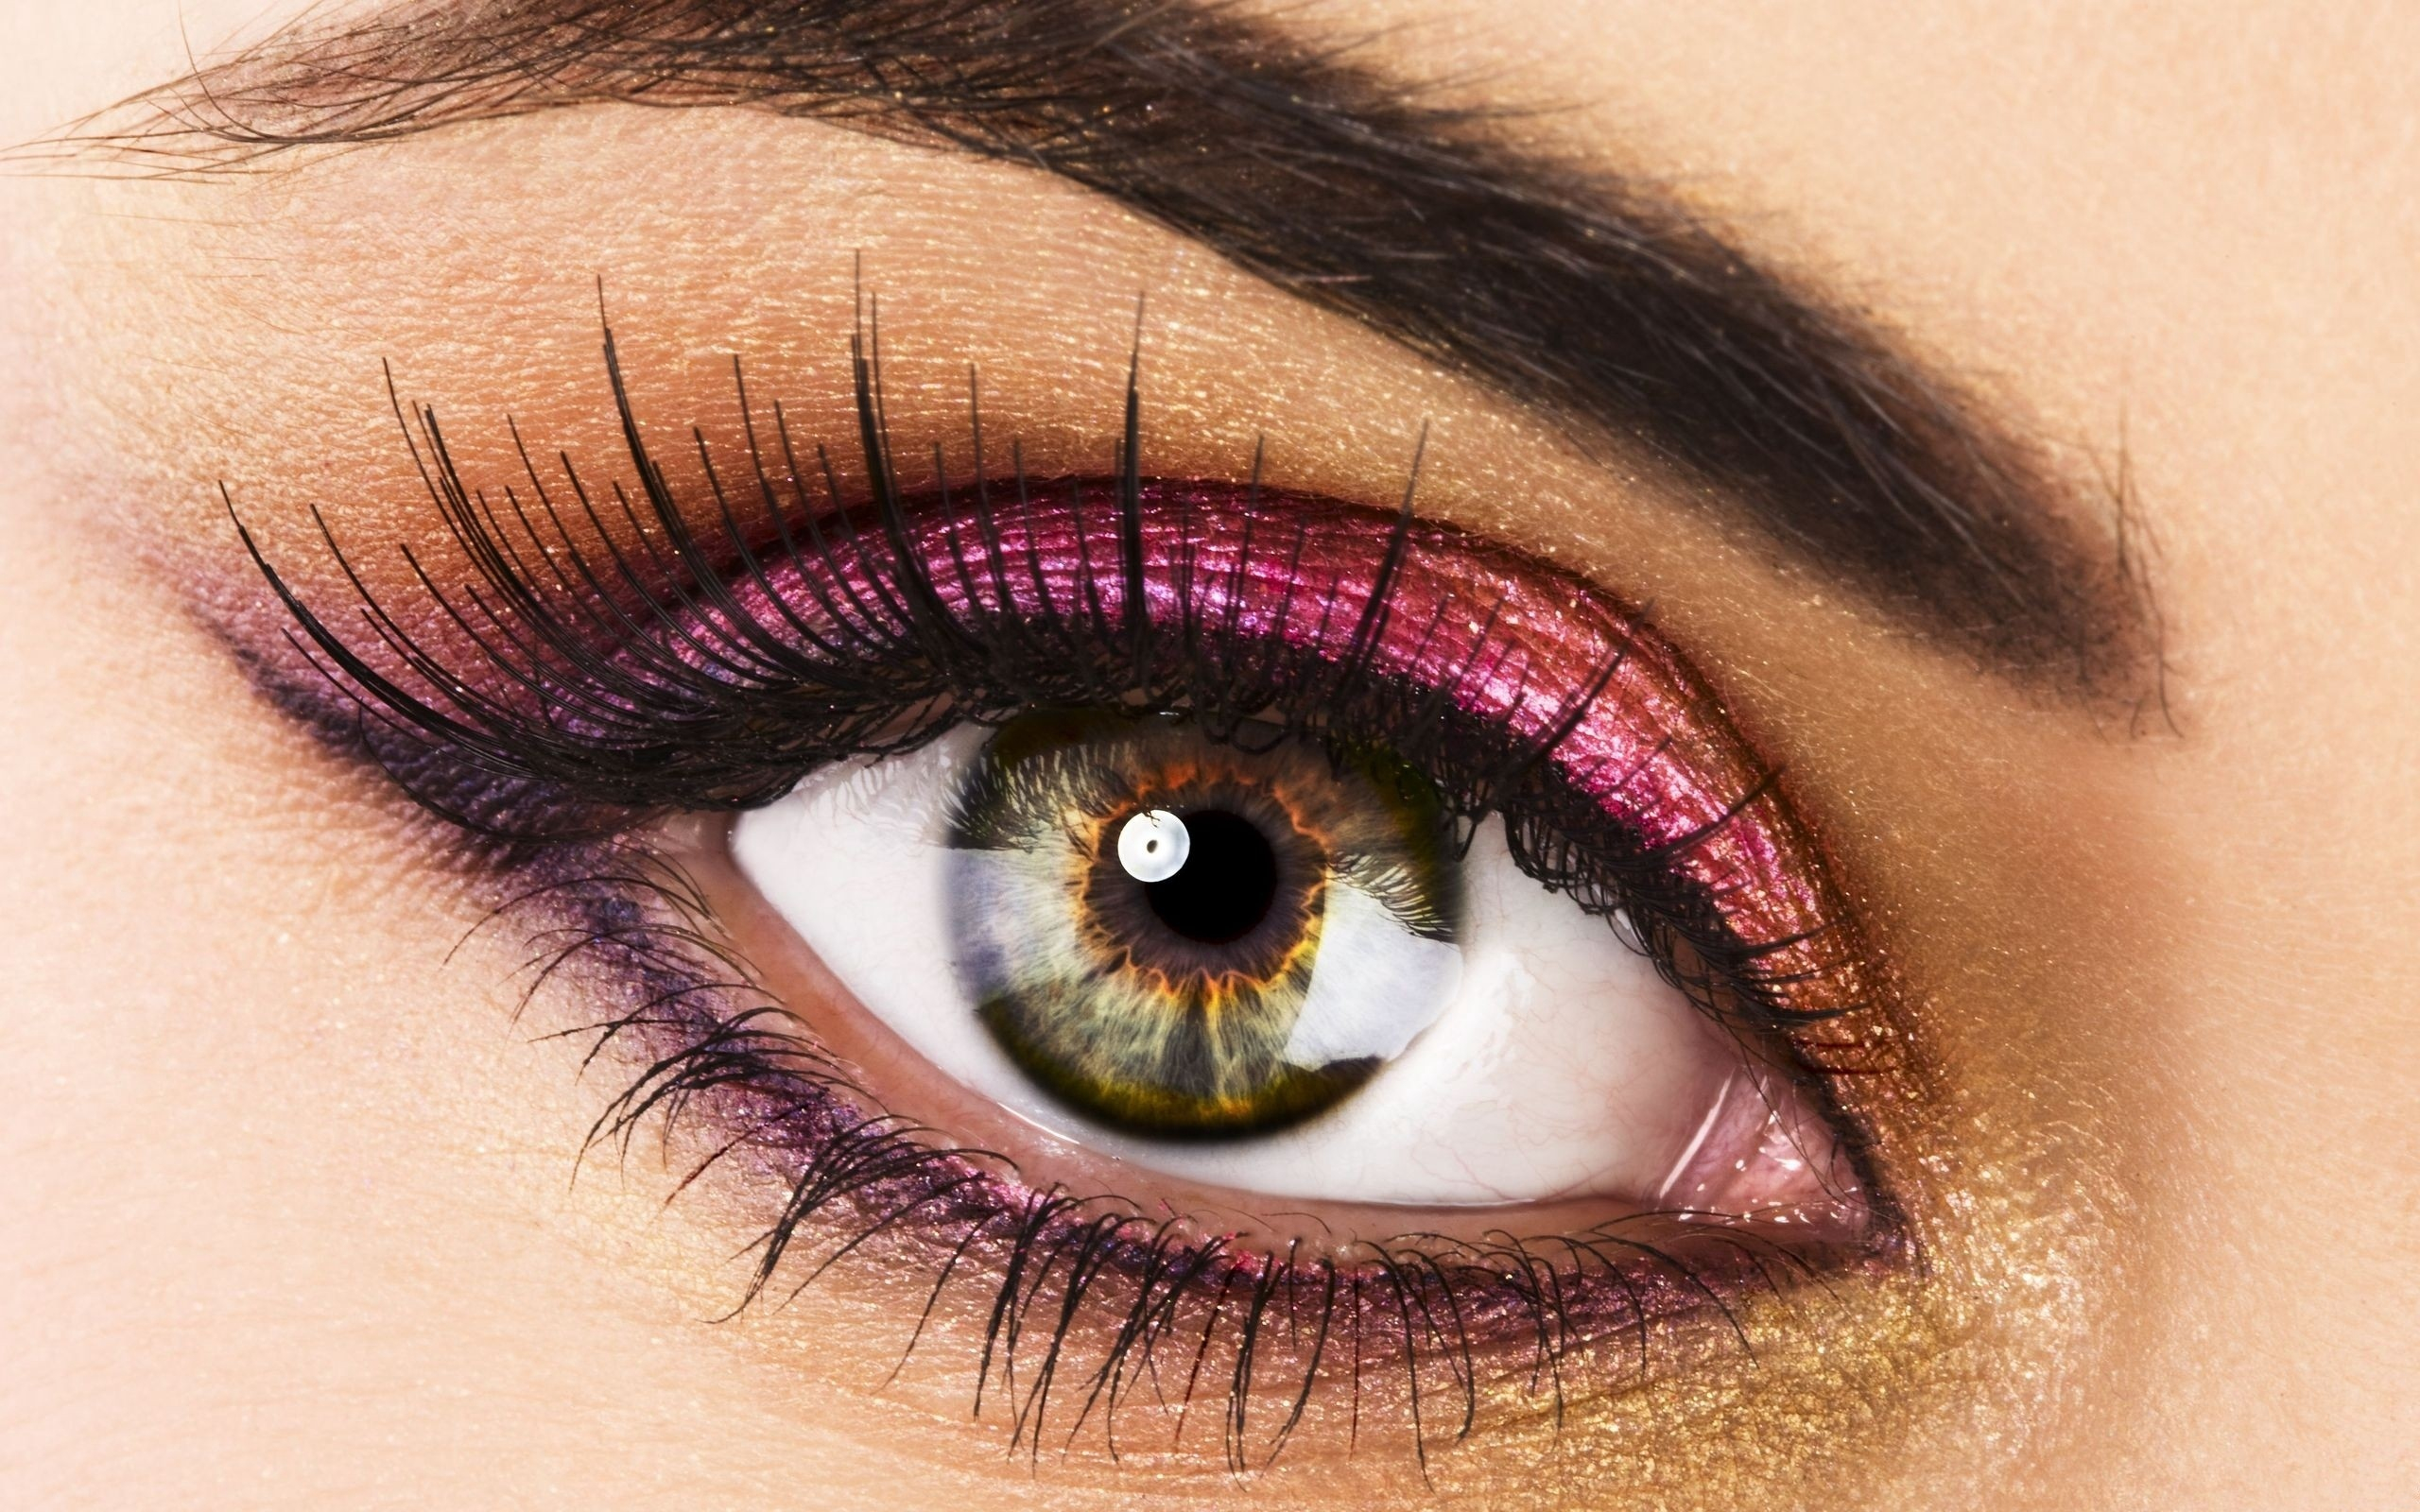 eyes makeup pics download download wallpaper 2560x1600 eyes